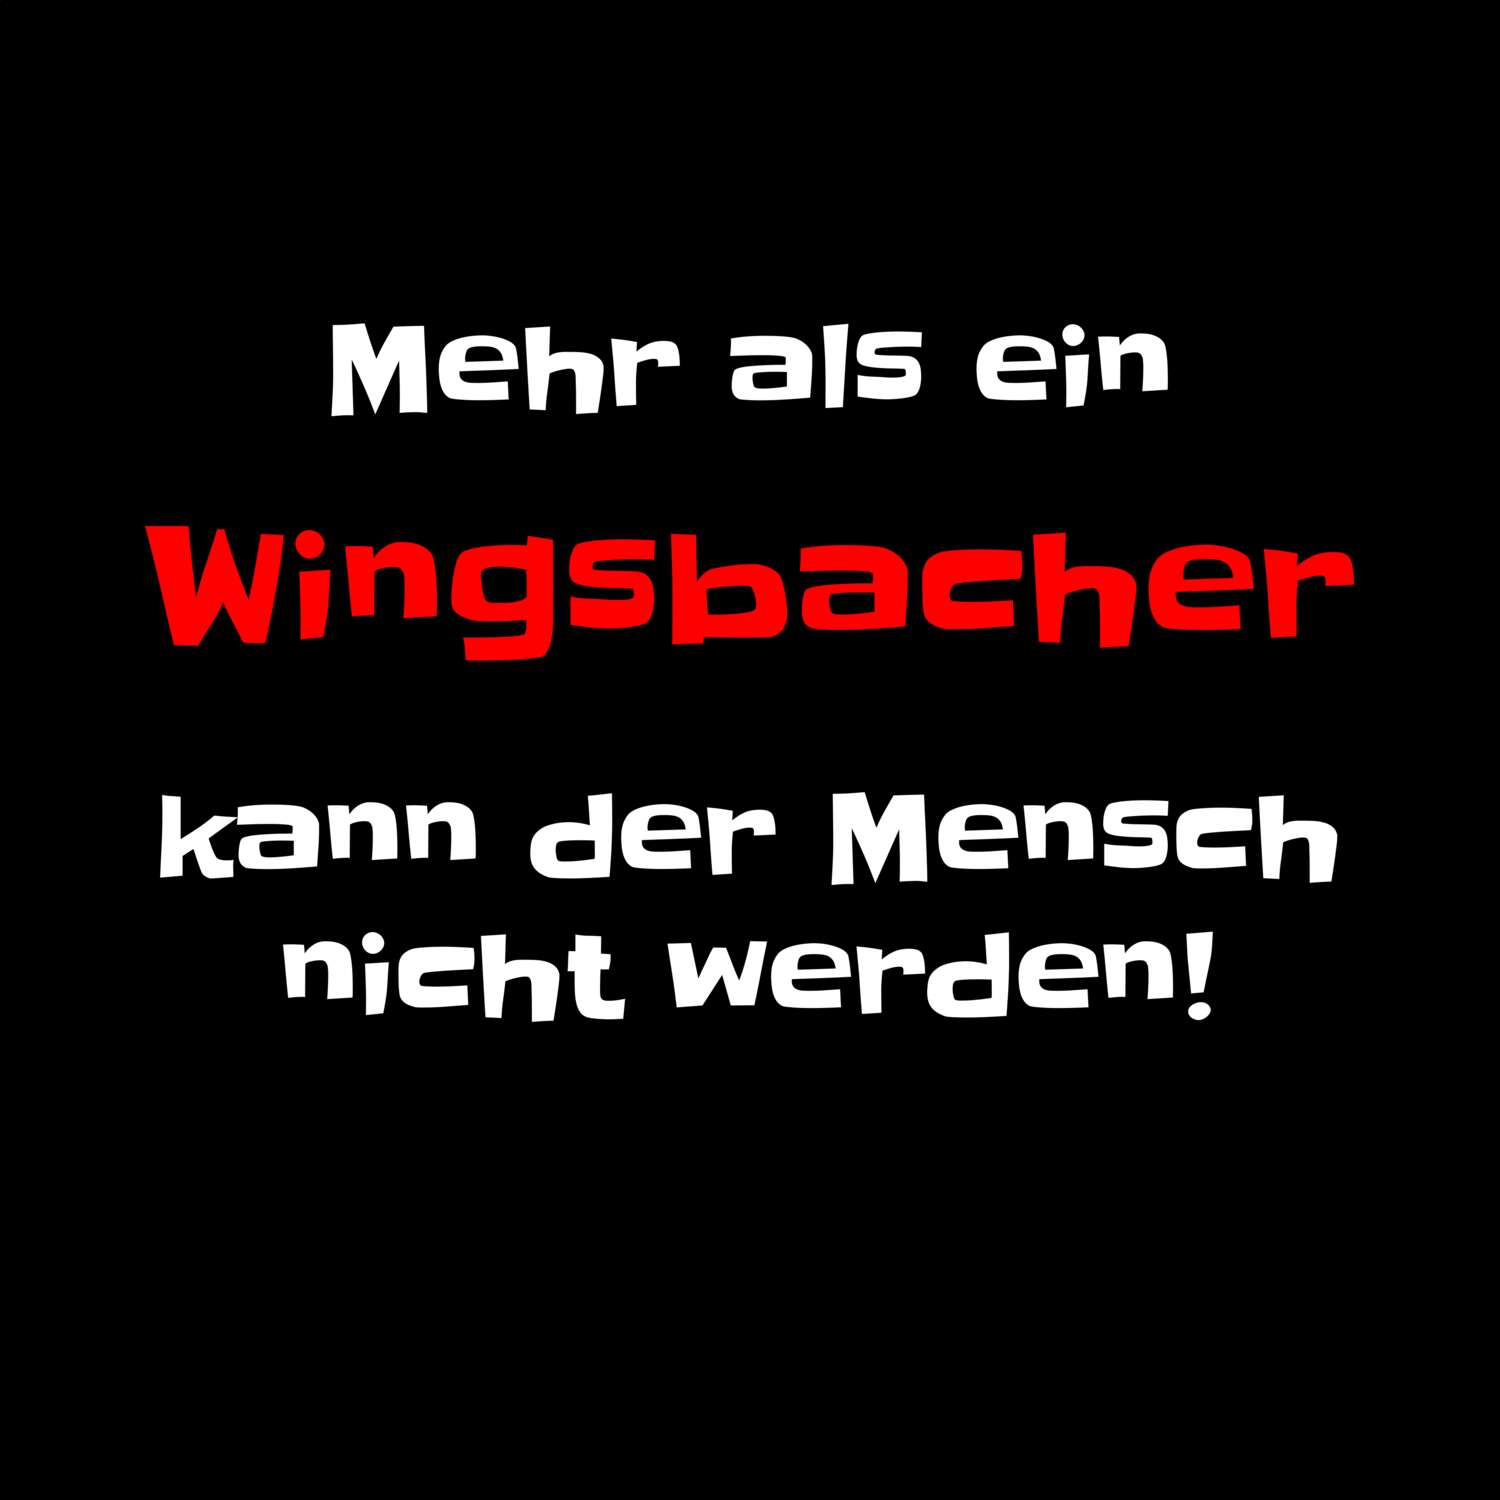 Wingsbach T-Shirt »Mehr als ein«